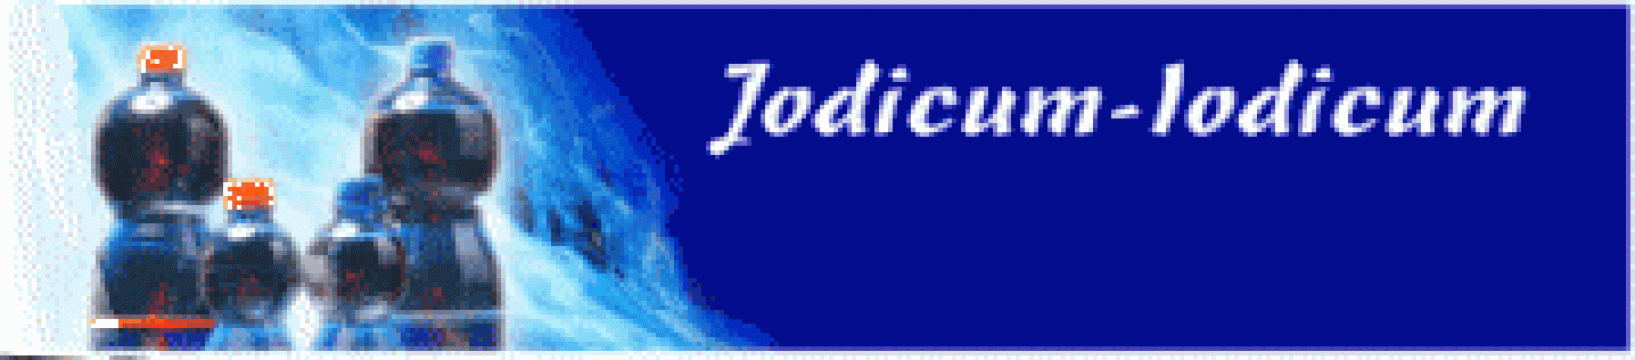 Apa iodata - Iodicum